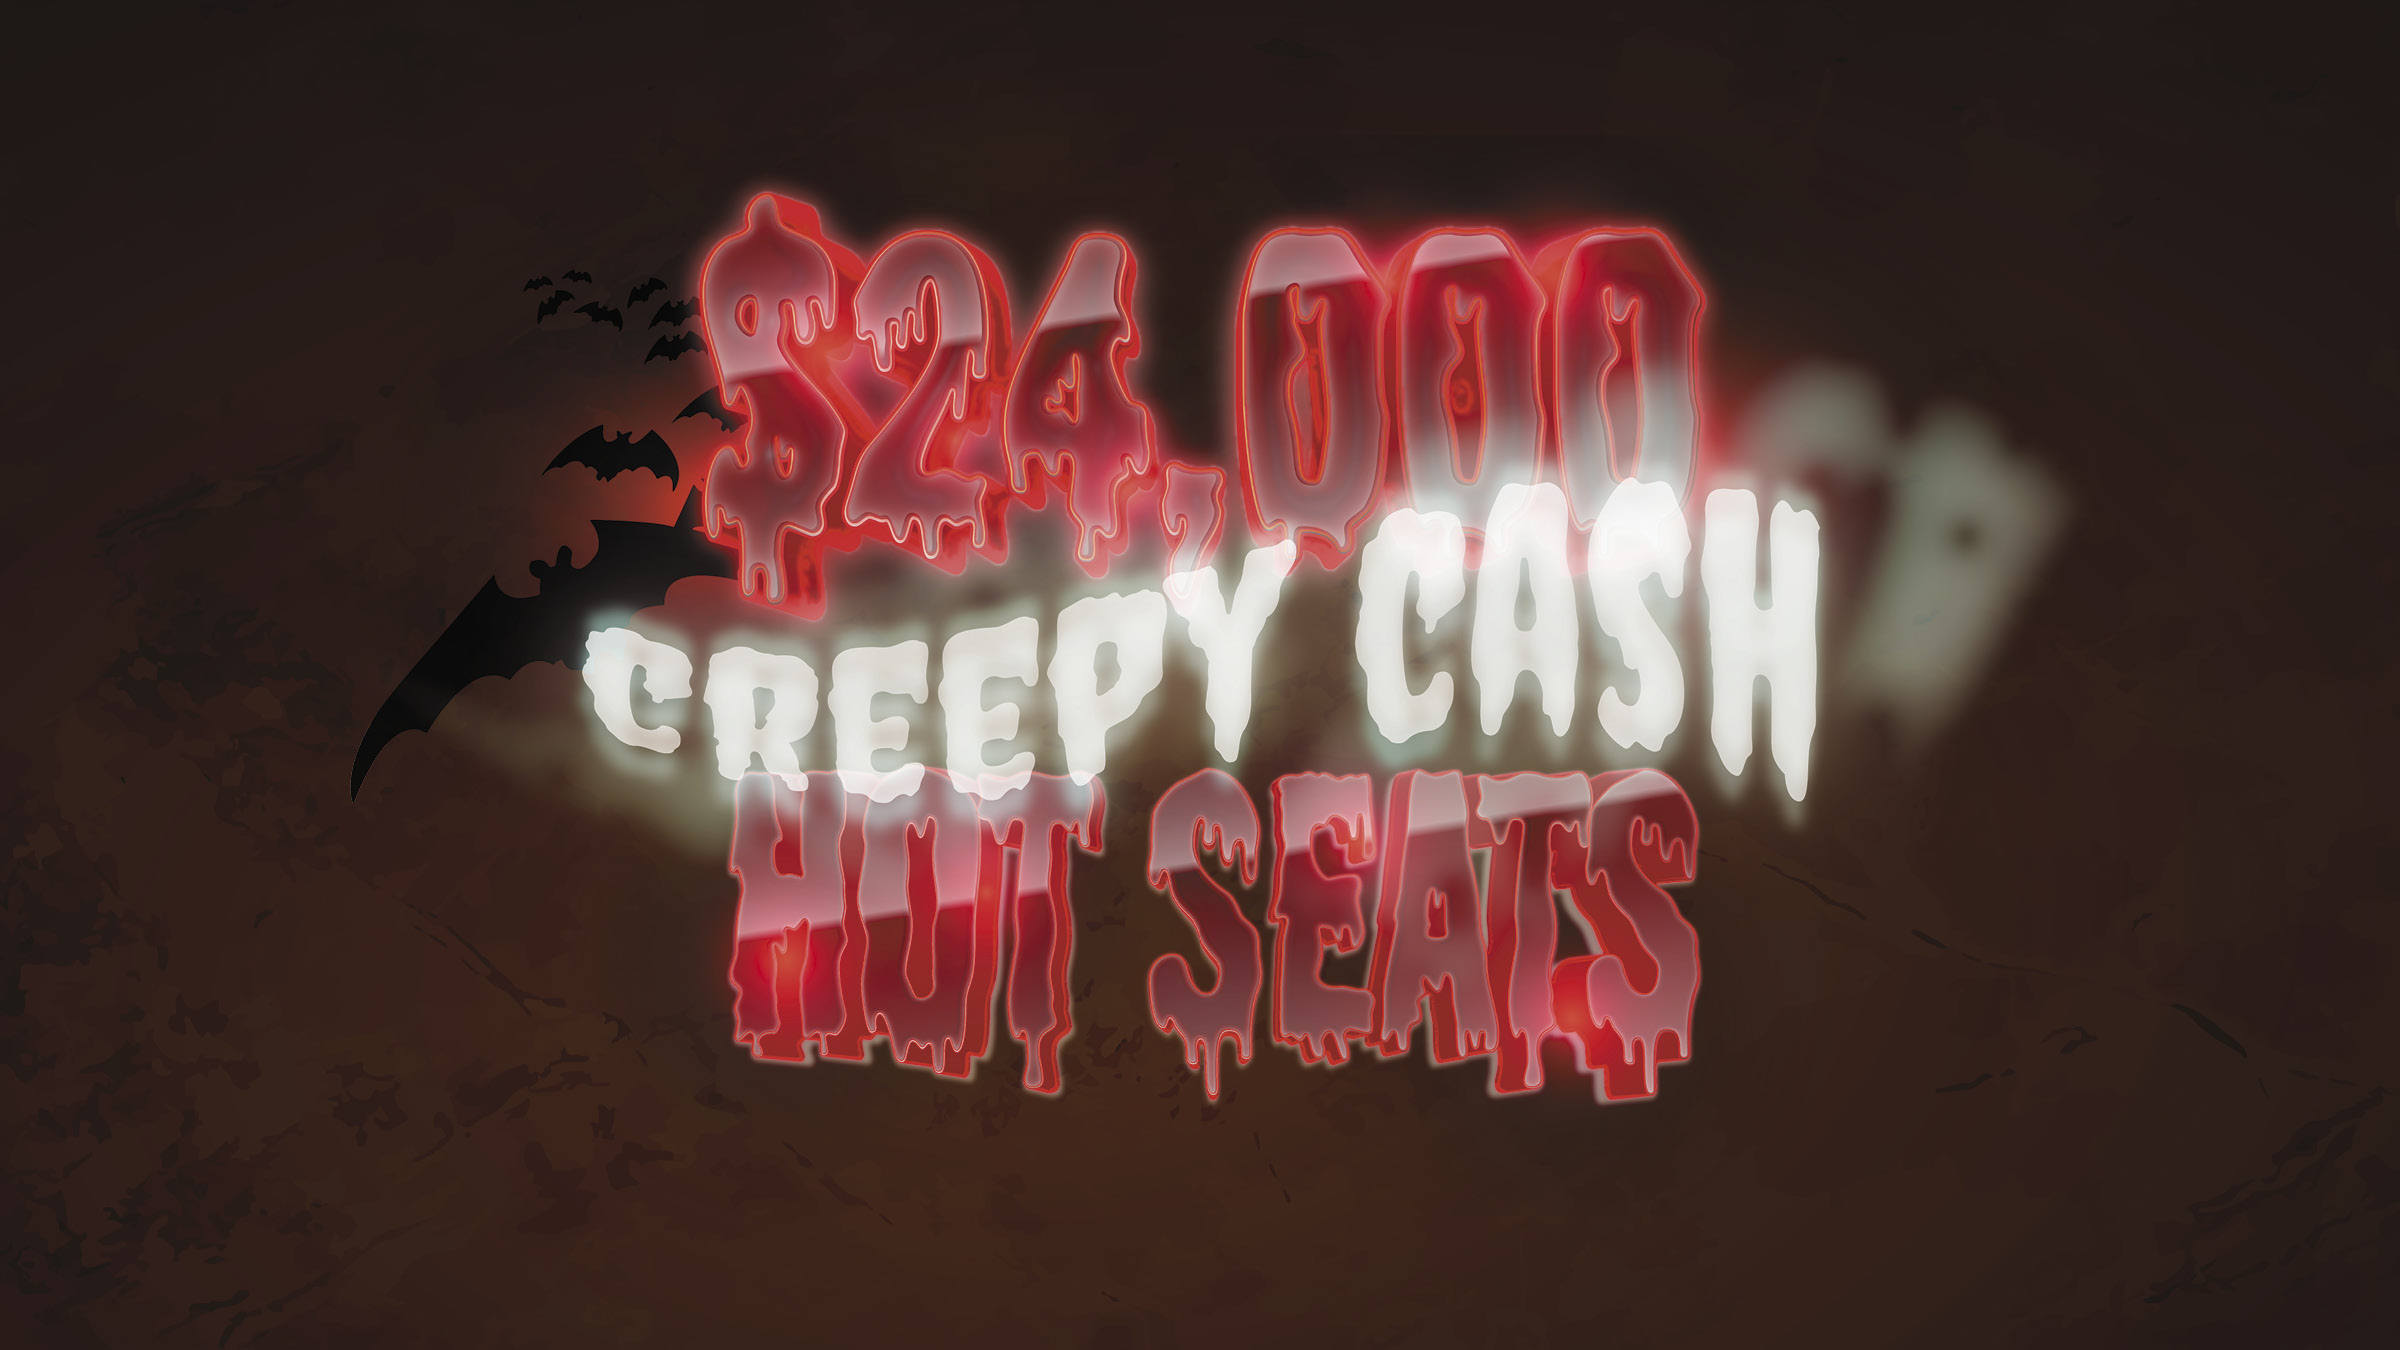 $24,000 Creepy Cash Hot Seats